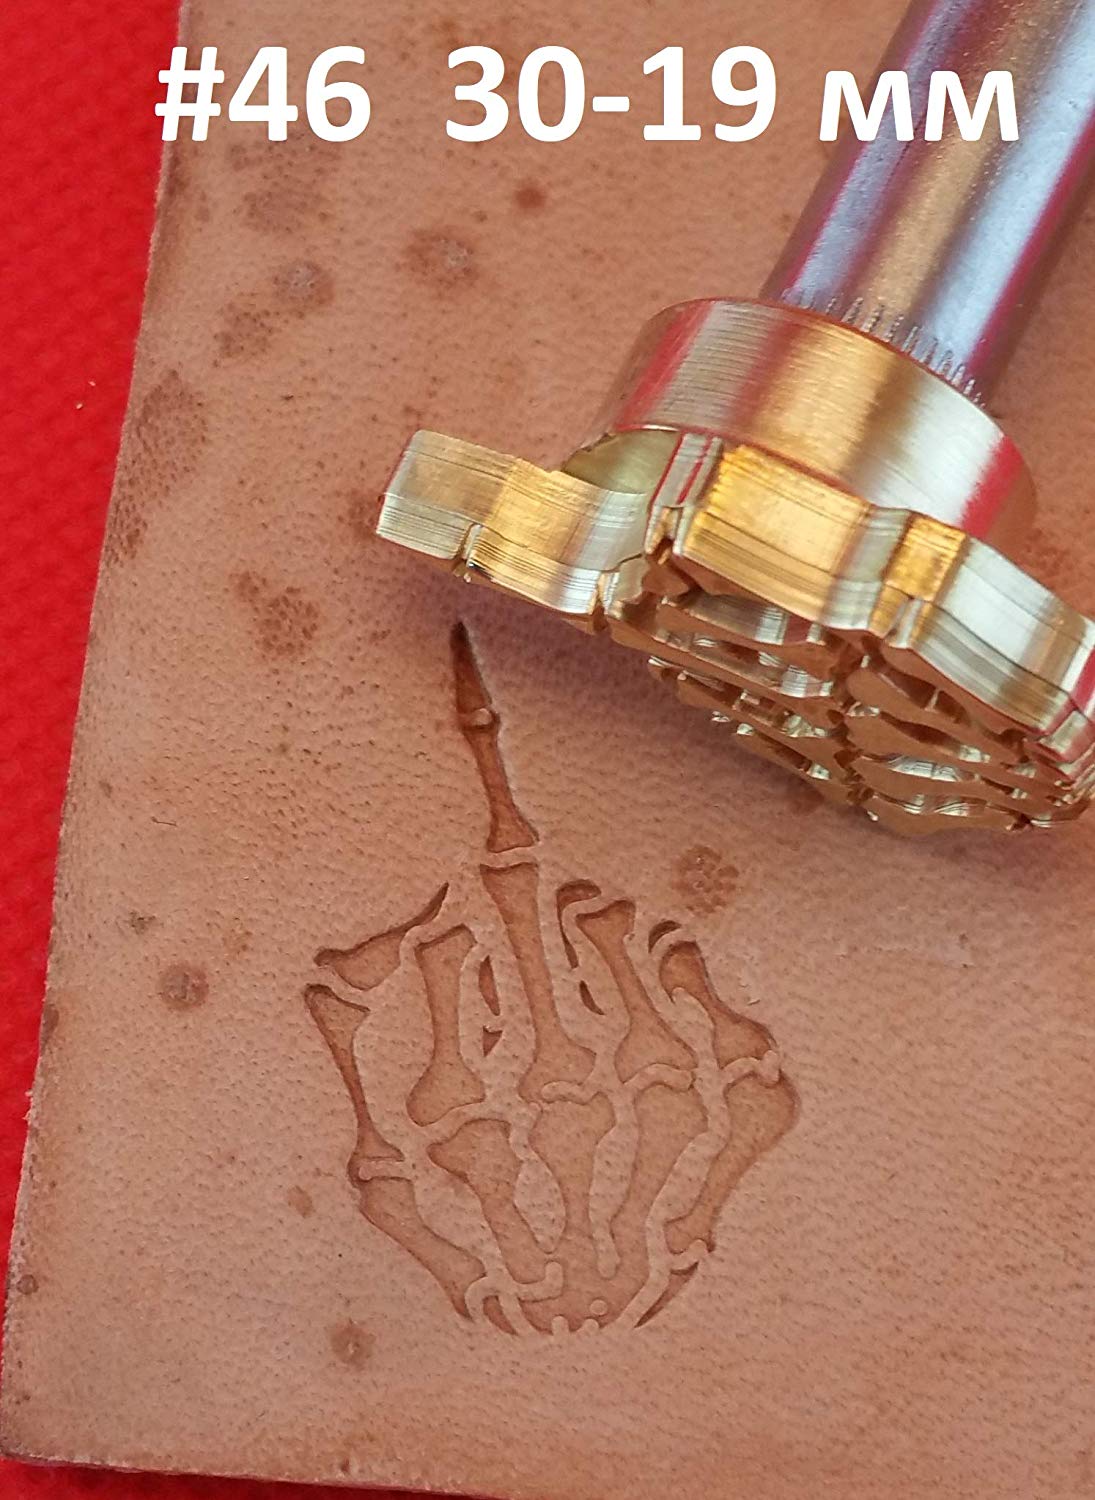 Leather stamp tool #46 - SpasGoranov